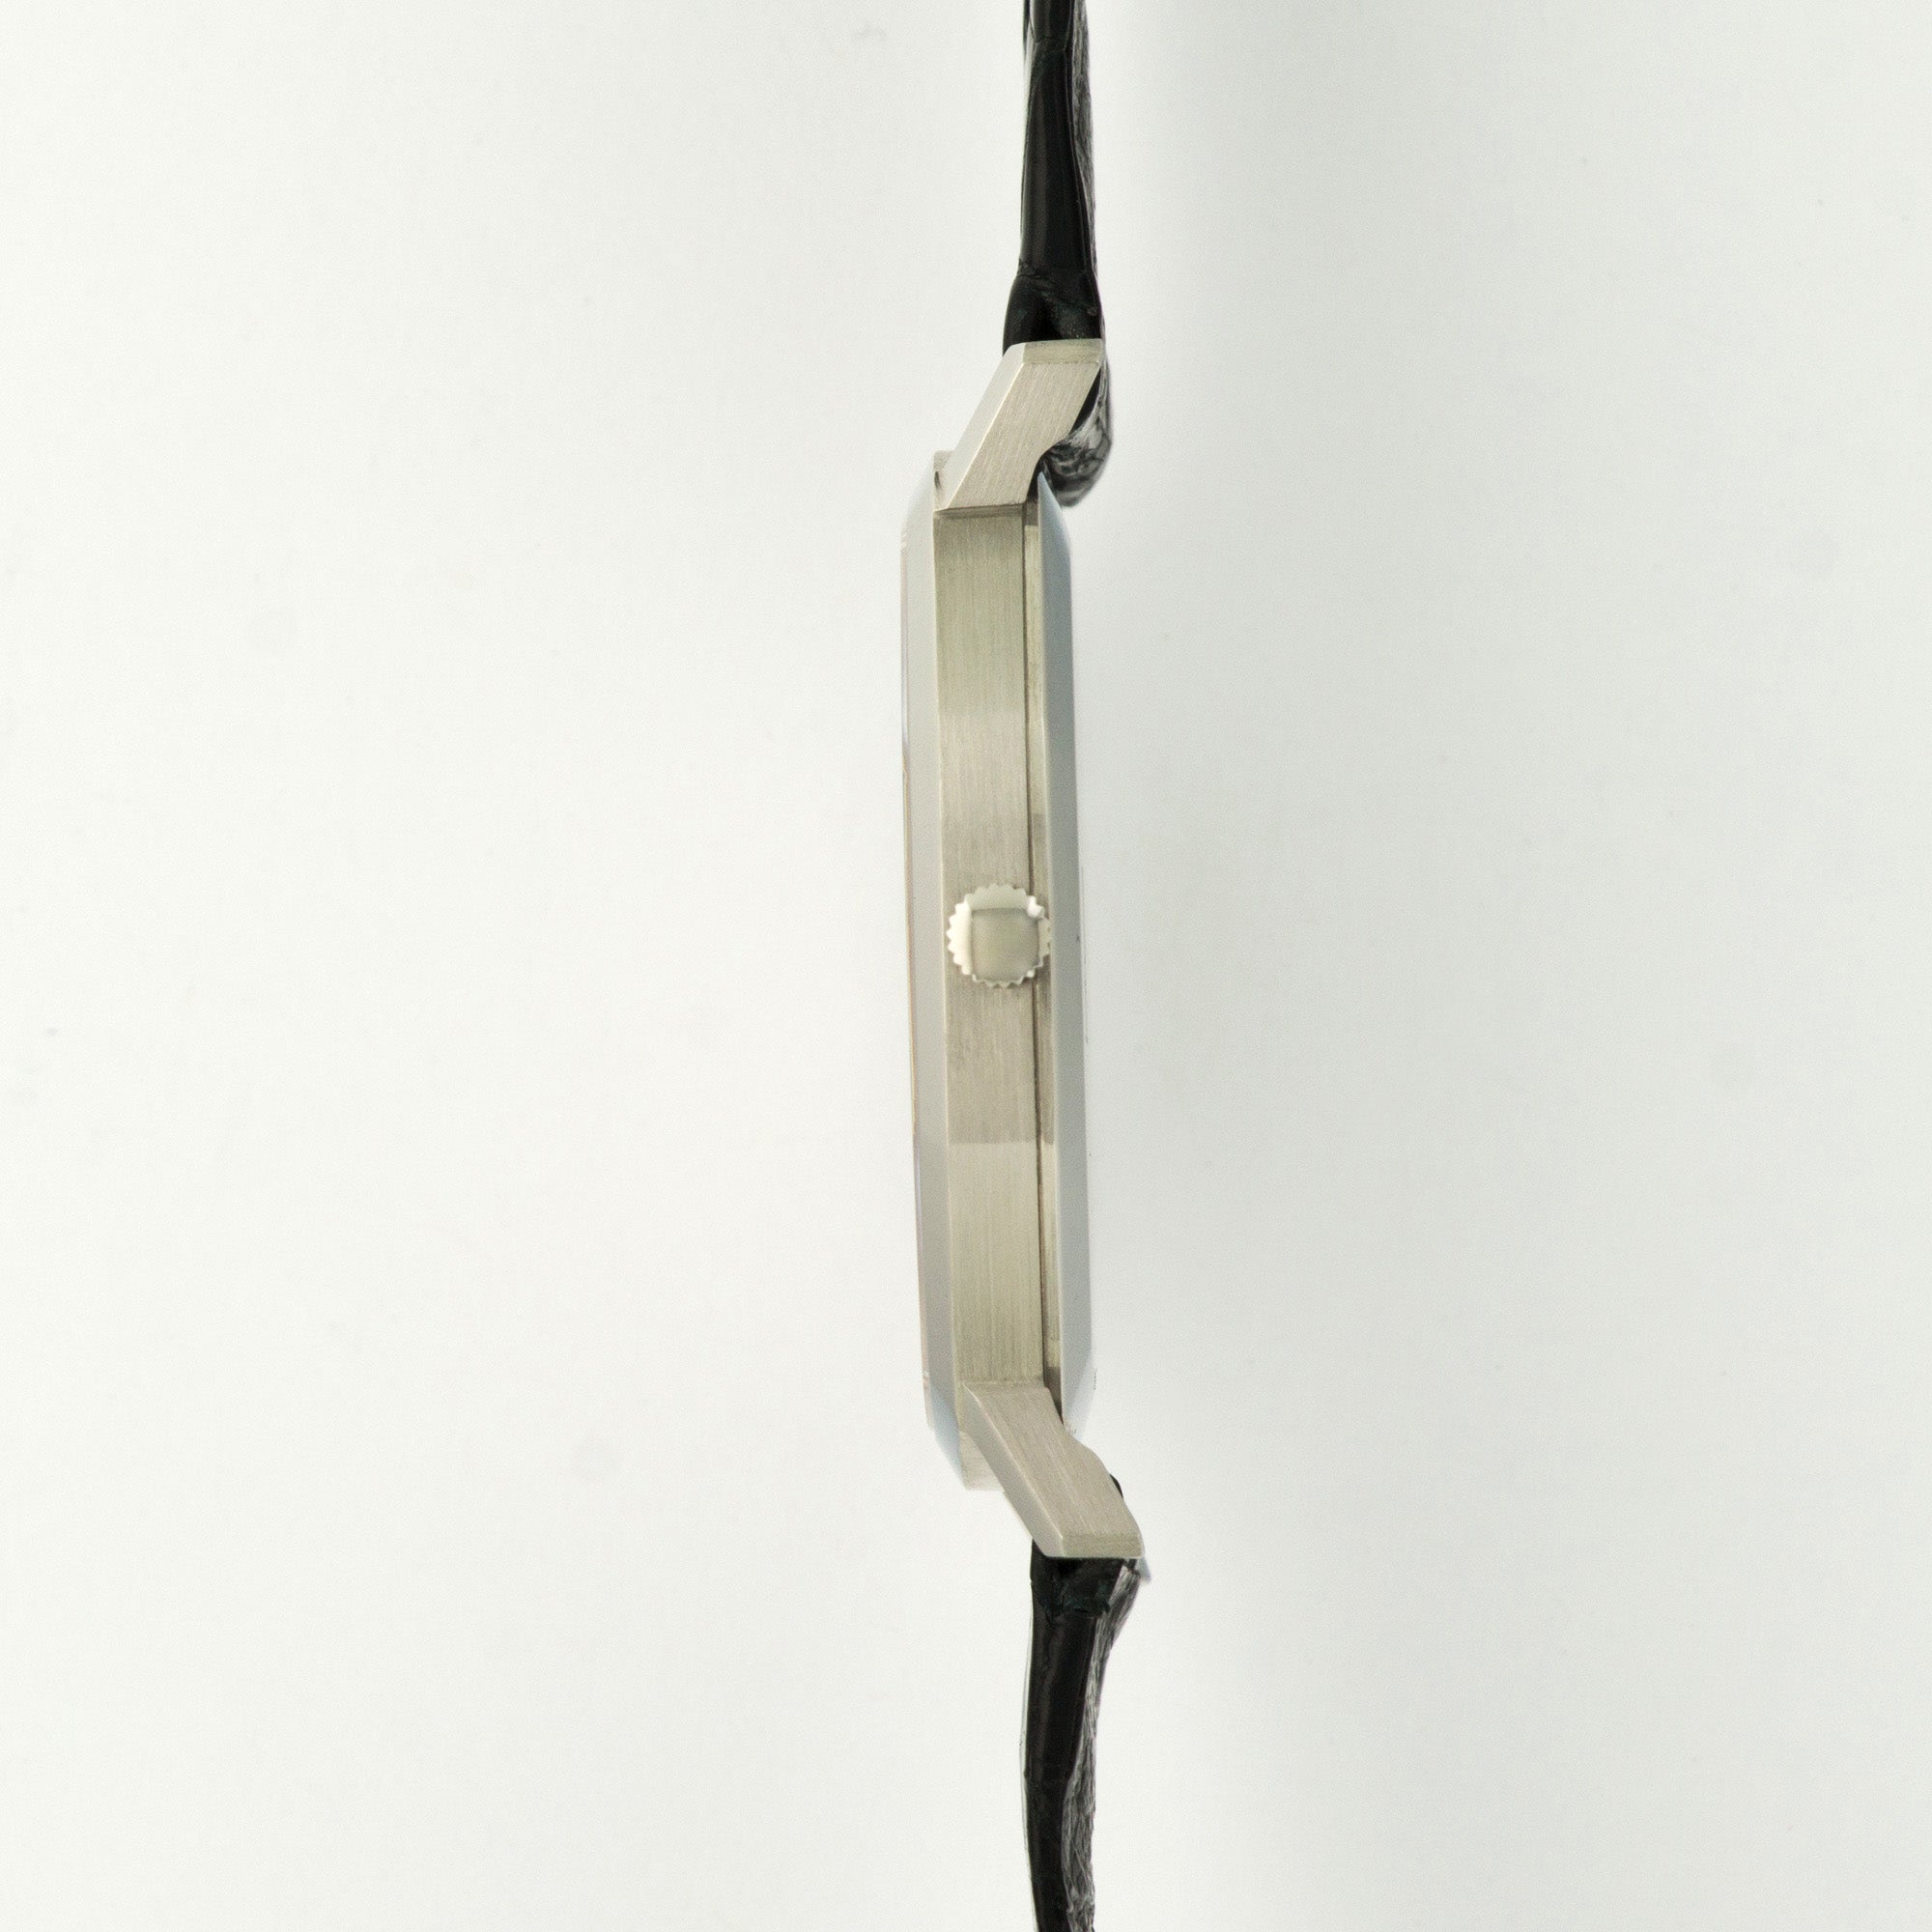 Audemars Piguet - Audemars Piguet Steel Oversized Automatic Watch - The Keystone Watches